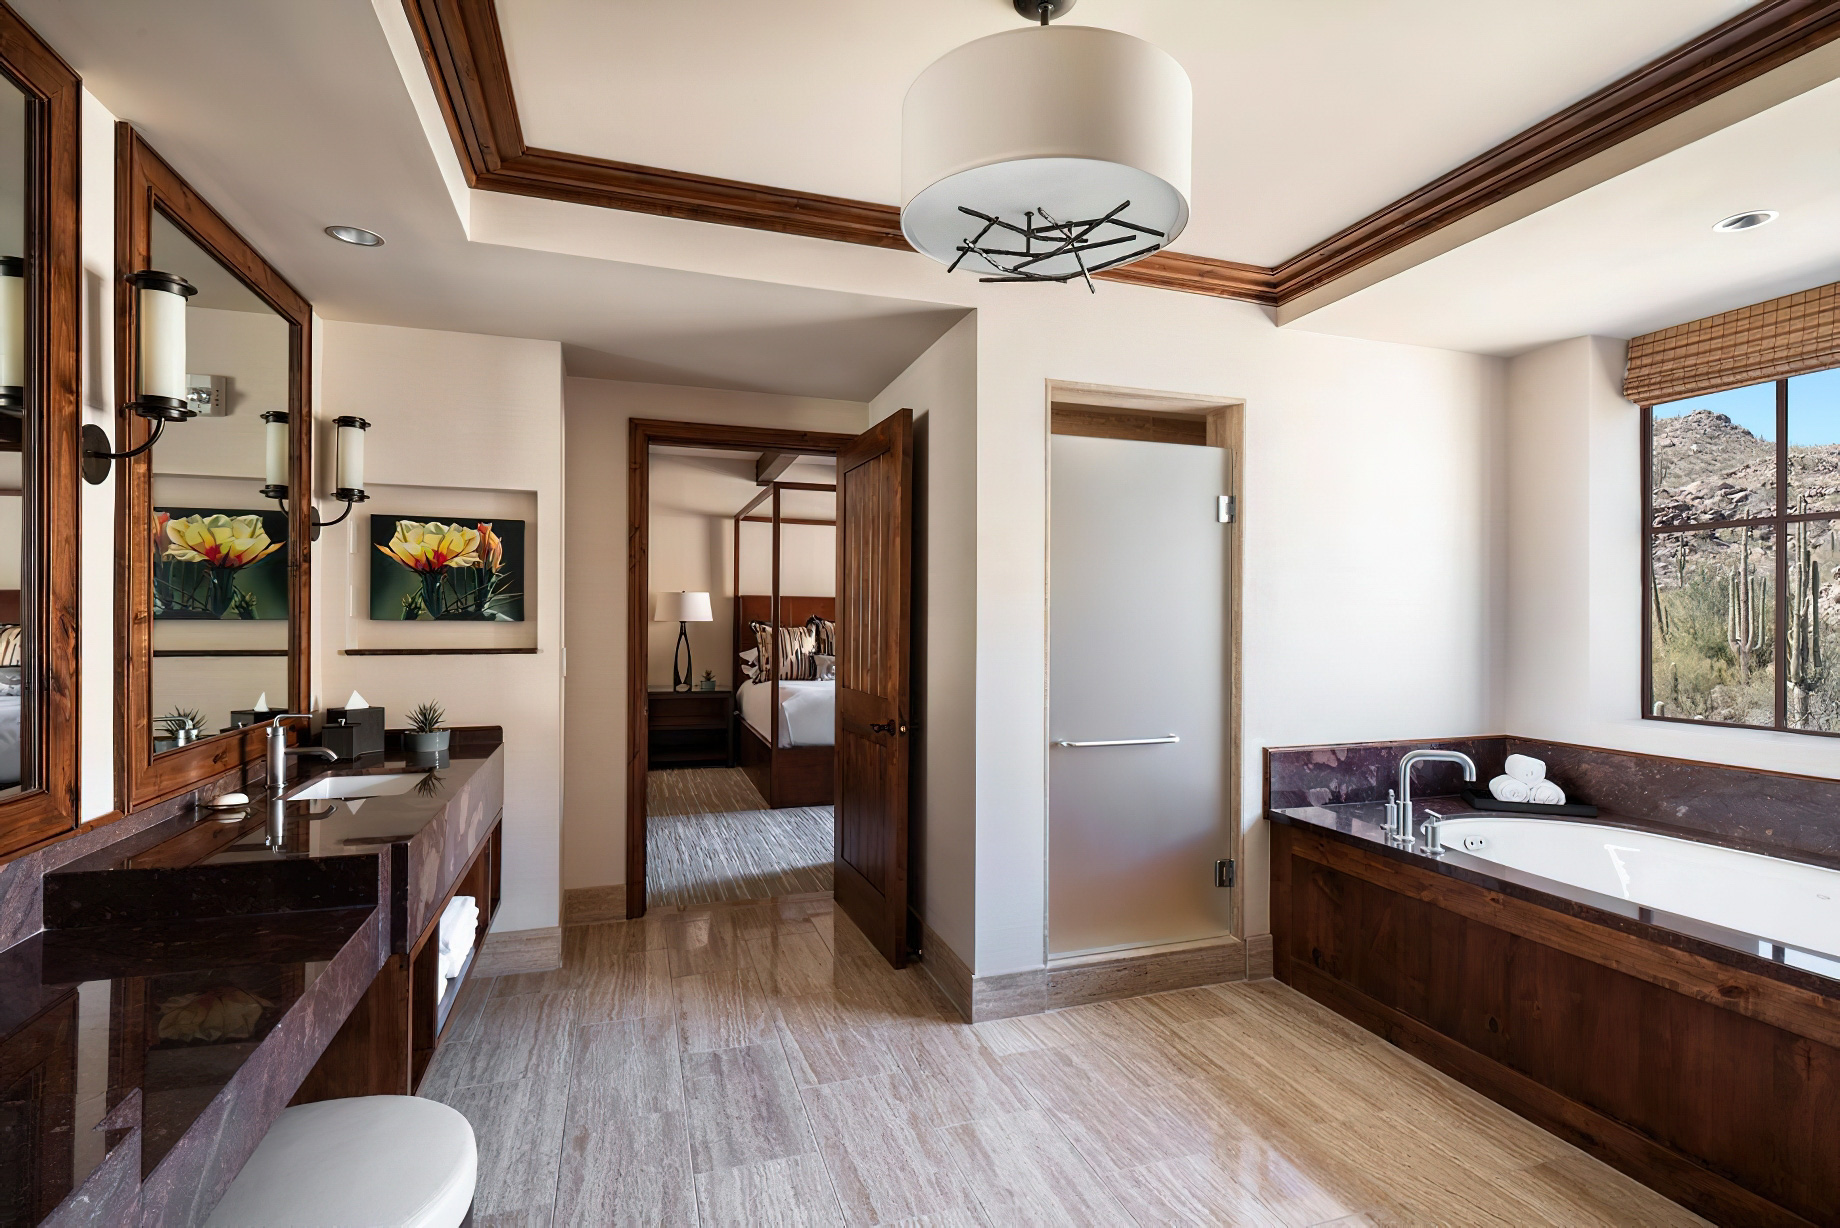 The Ritz-Carlton, Dove Mountain Resort – Marana, AZ, USA – Ritz-Carlton Suite Bathroom